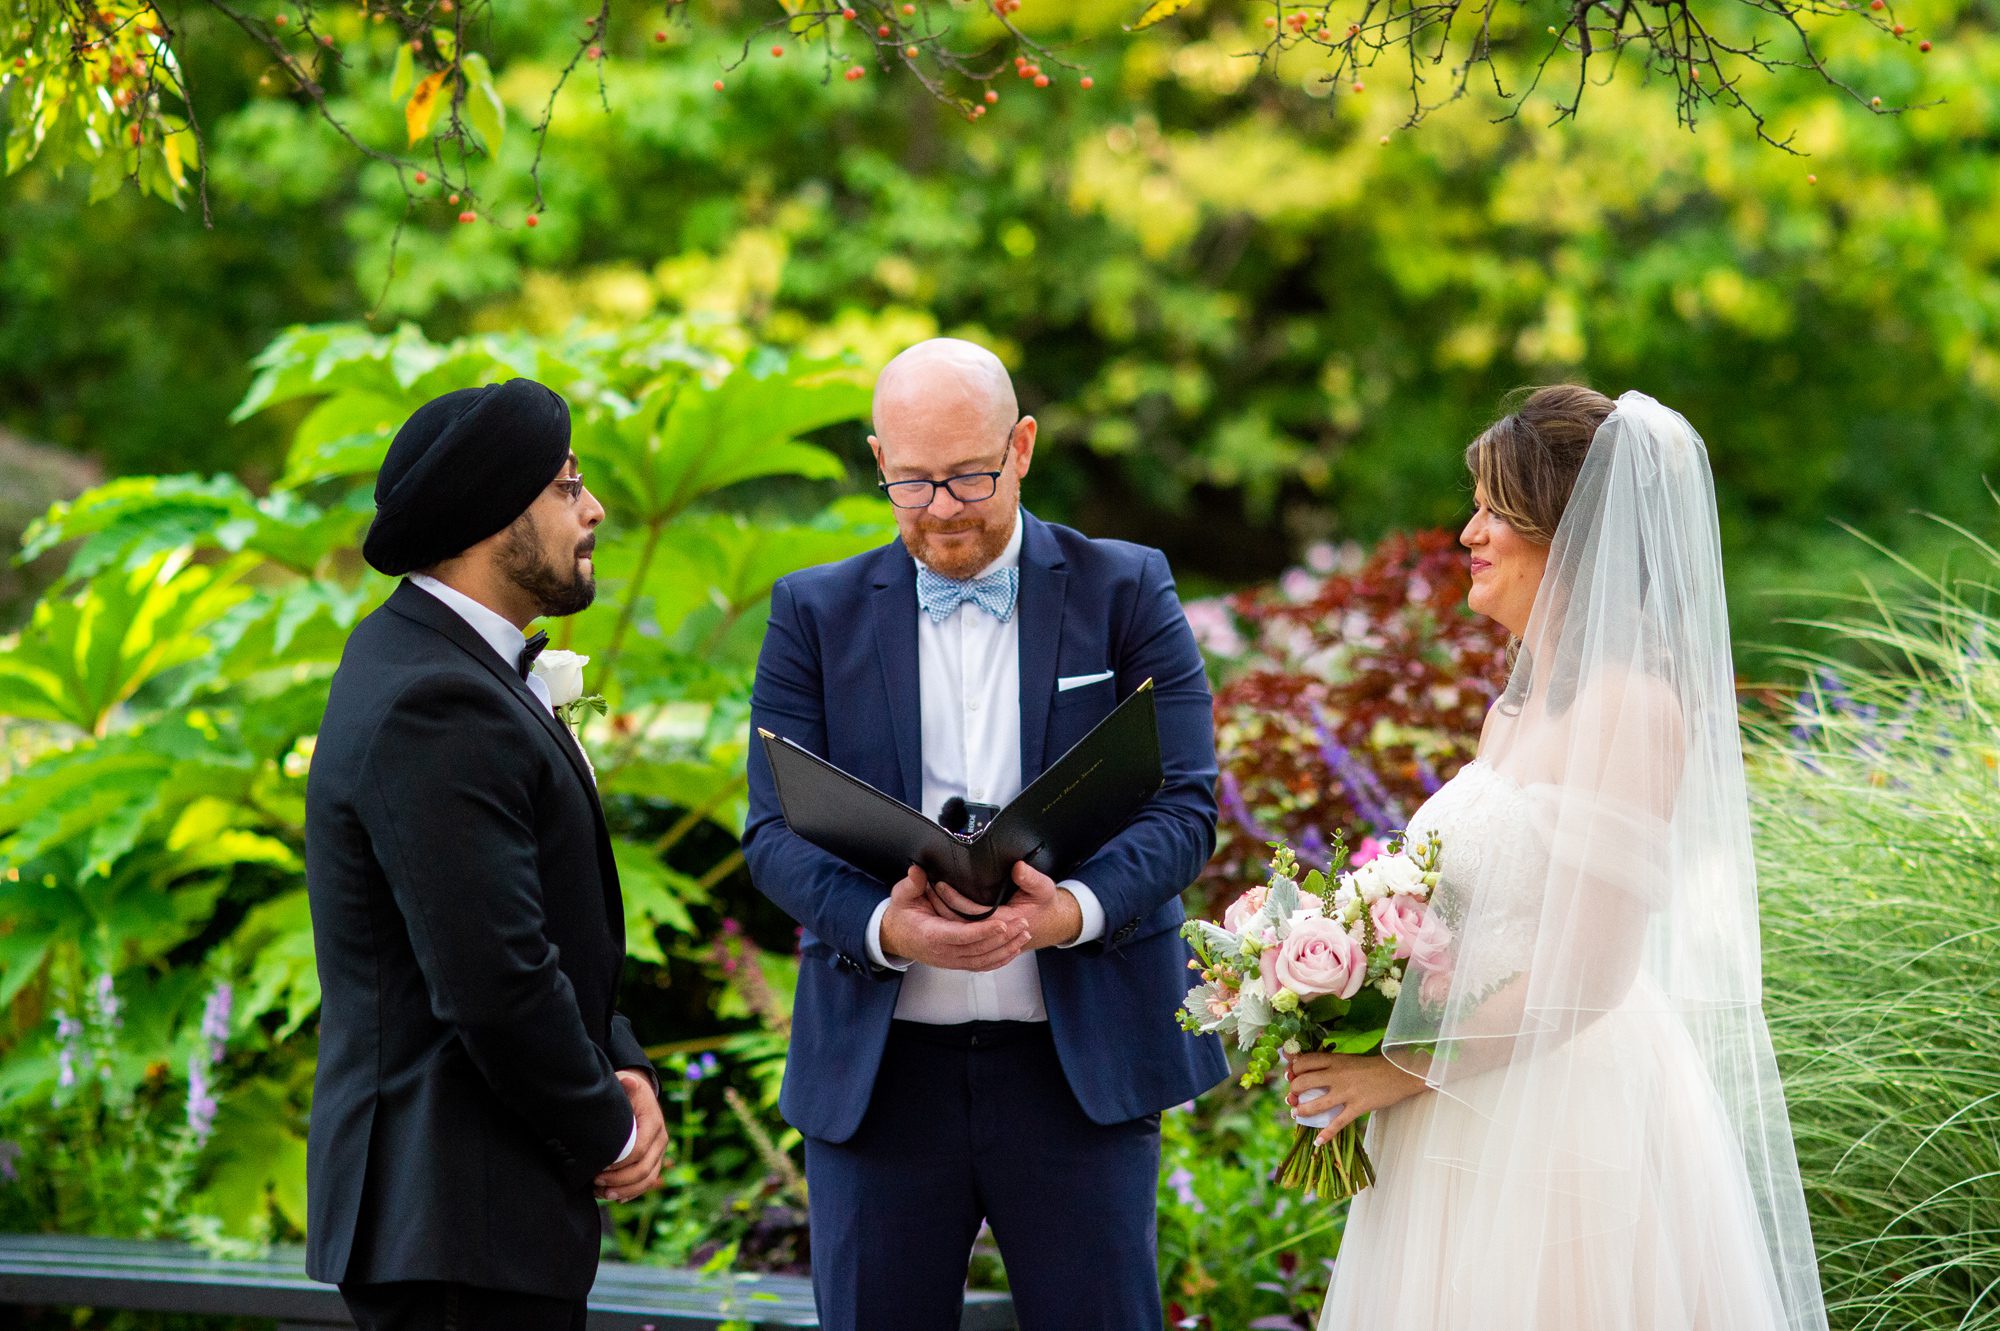 Wedding Vows at Conservatory Garden Wedding